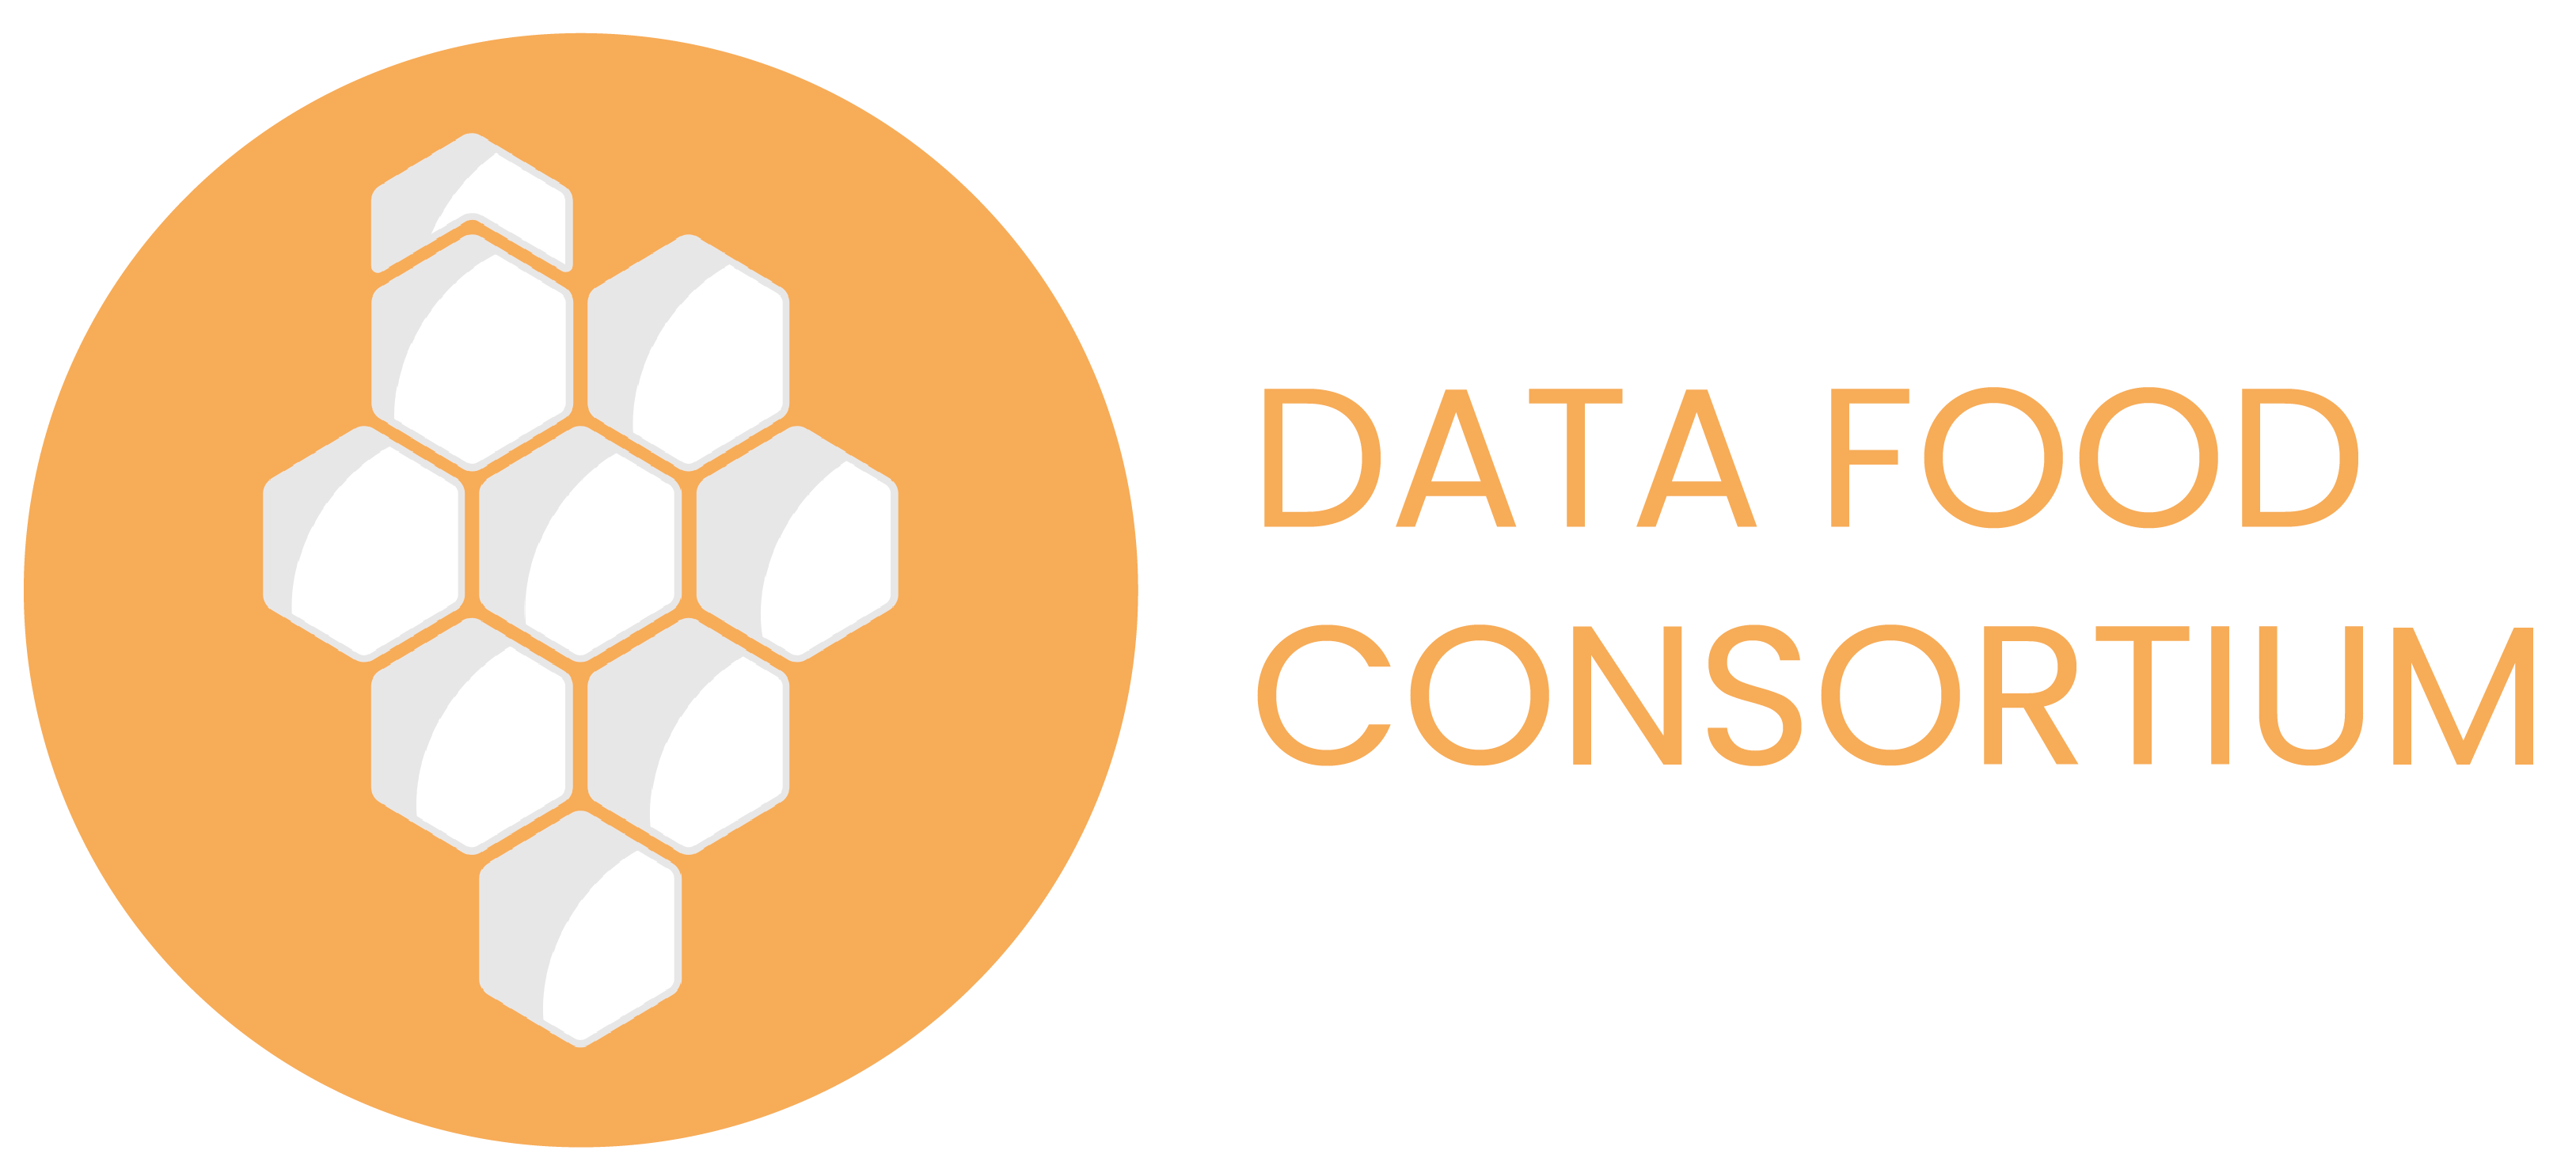 data food consortium logo